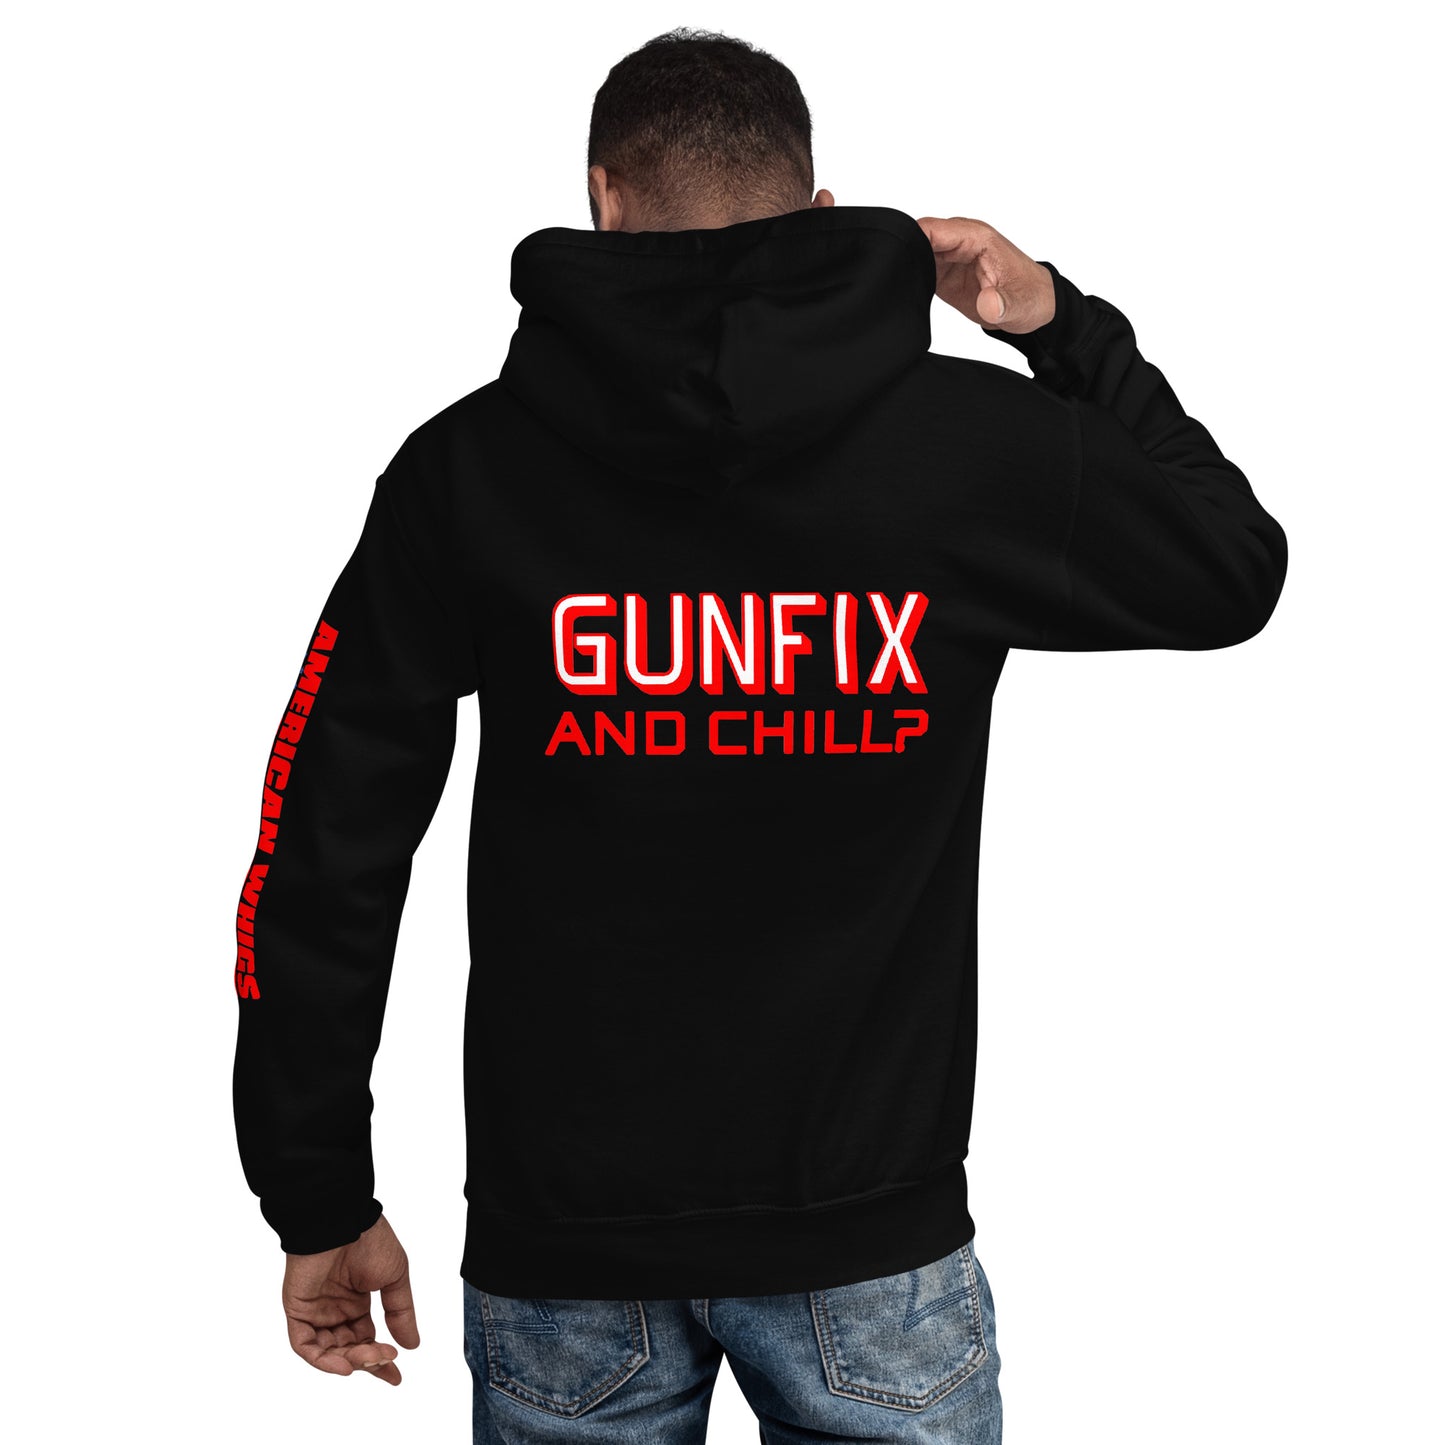 GUNFIX & Chill? Unisex Hoodie